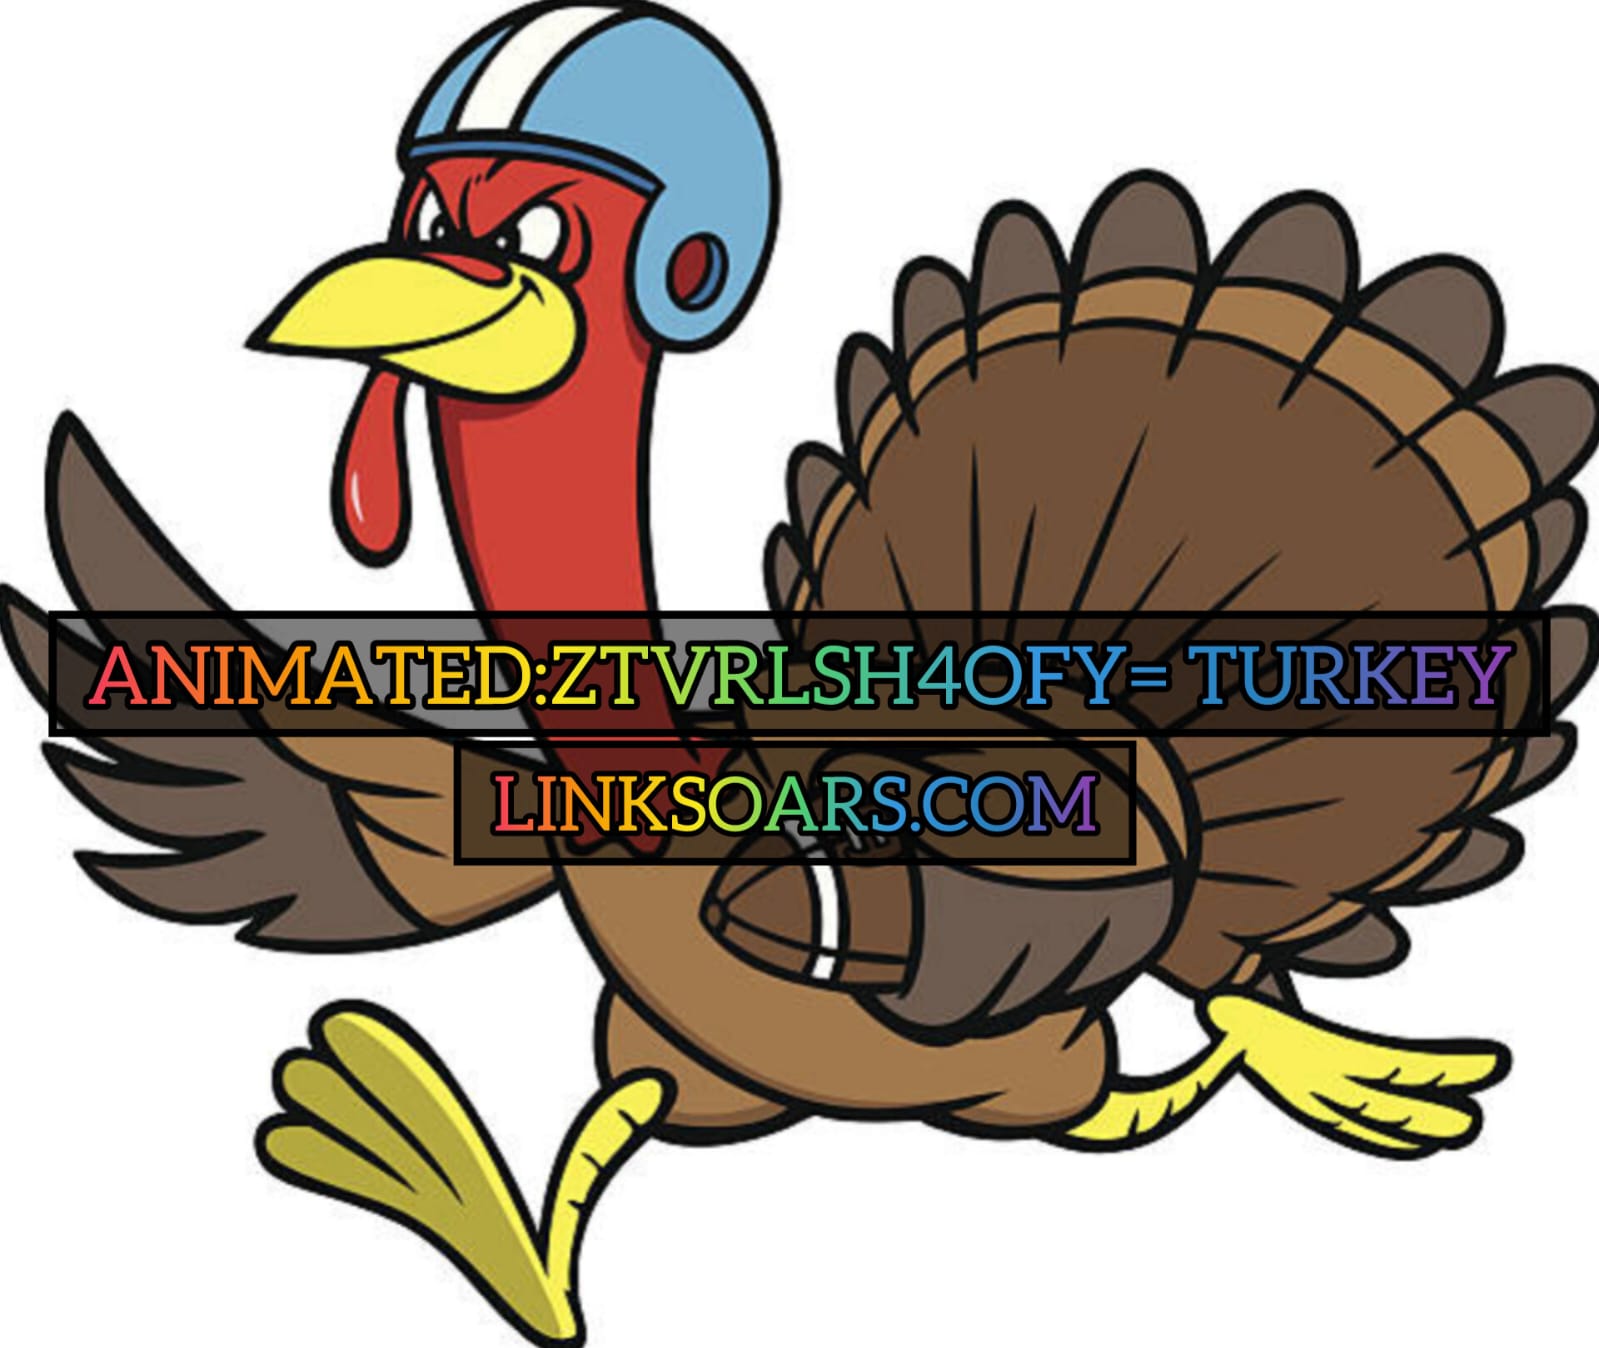 Animated:ztvrlsh4ofy= Turkey